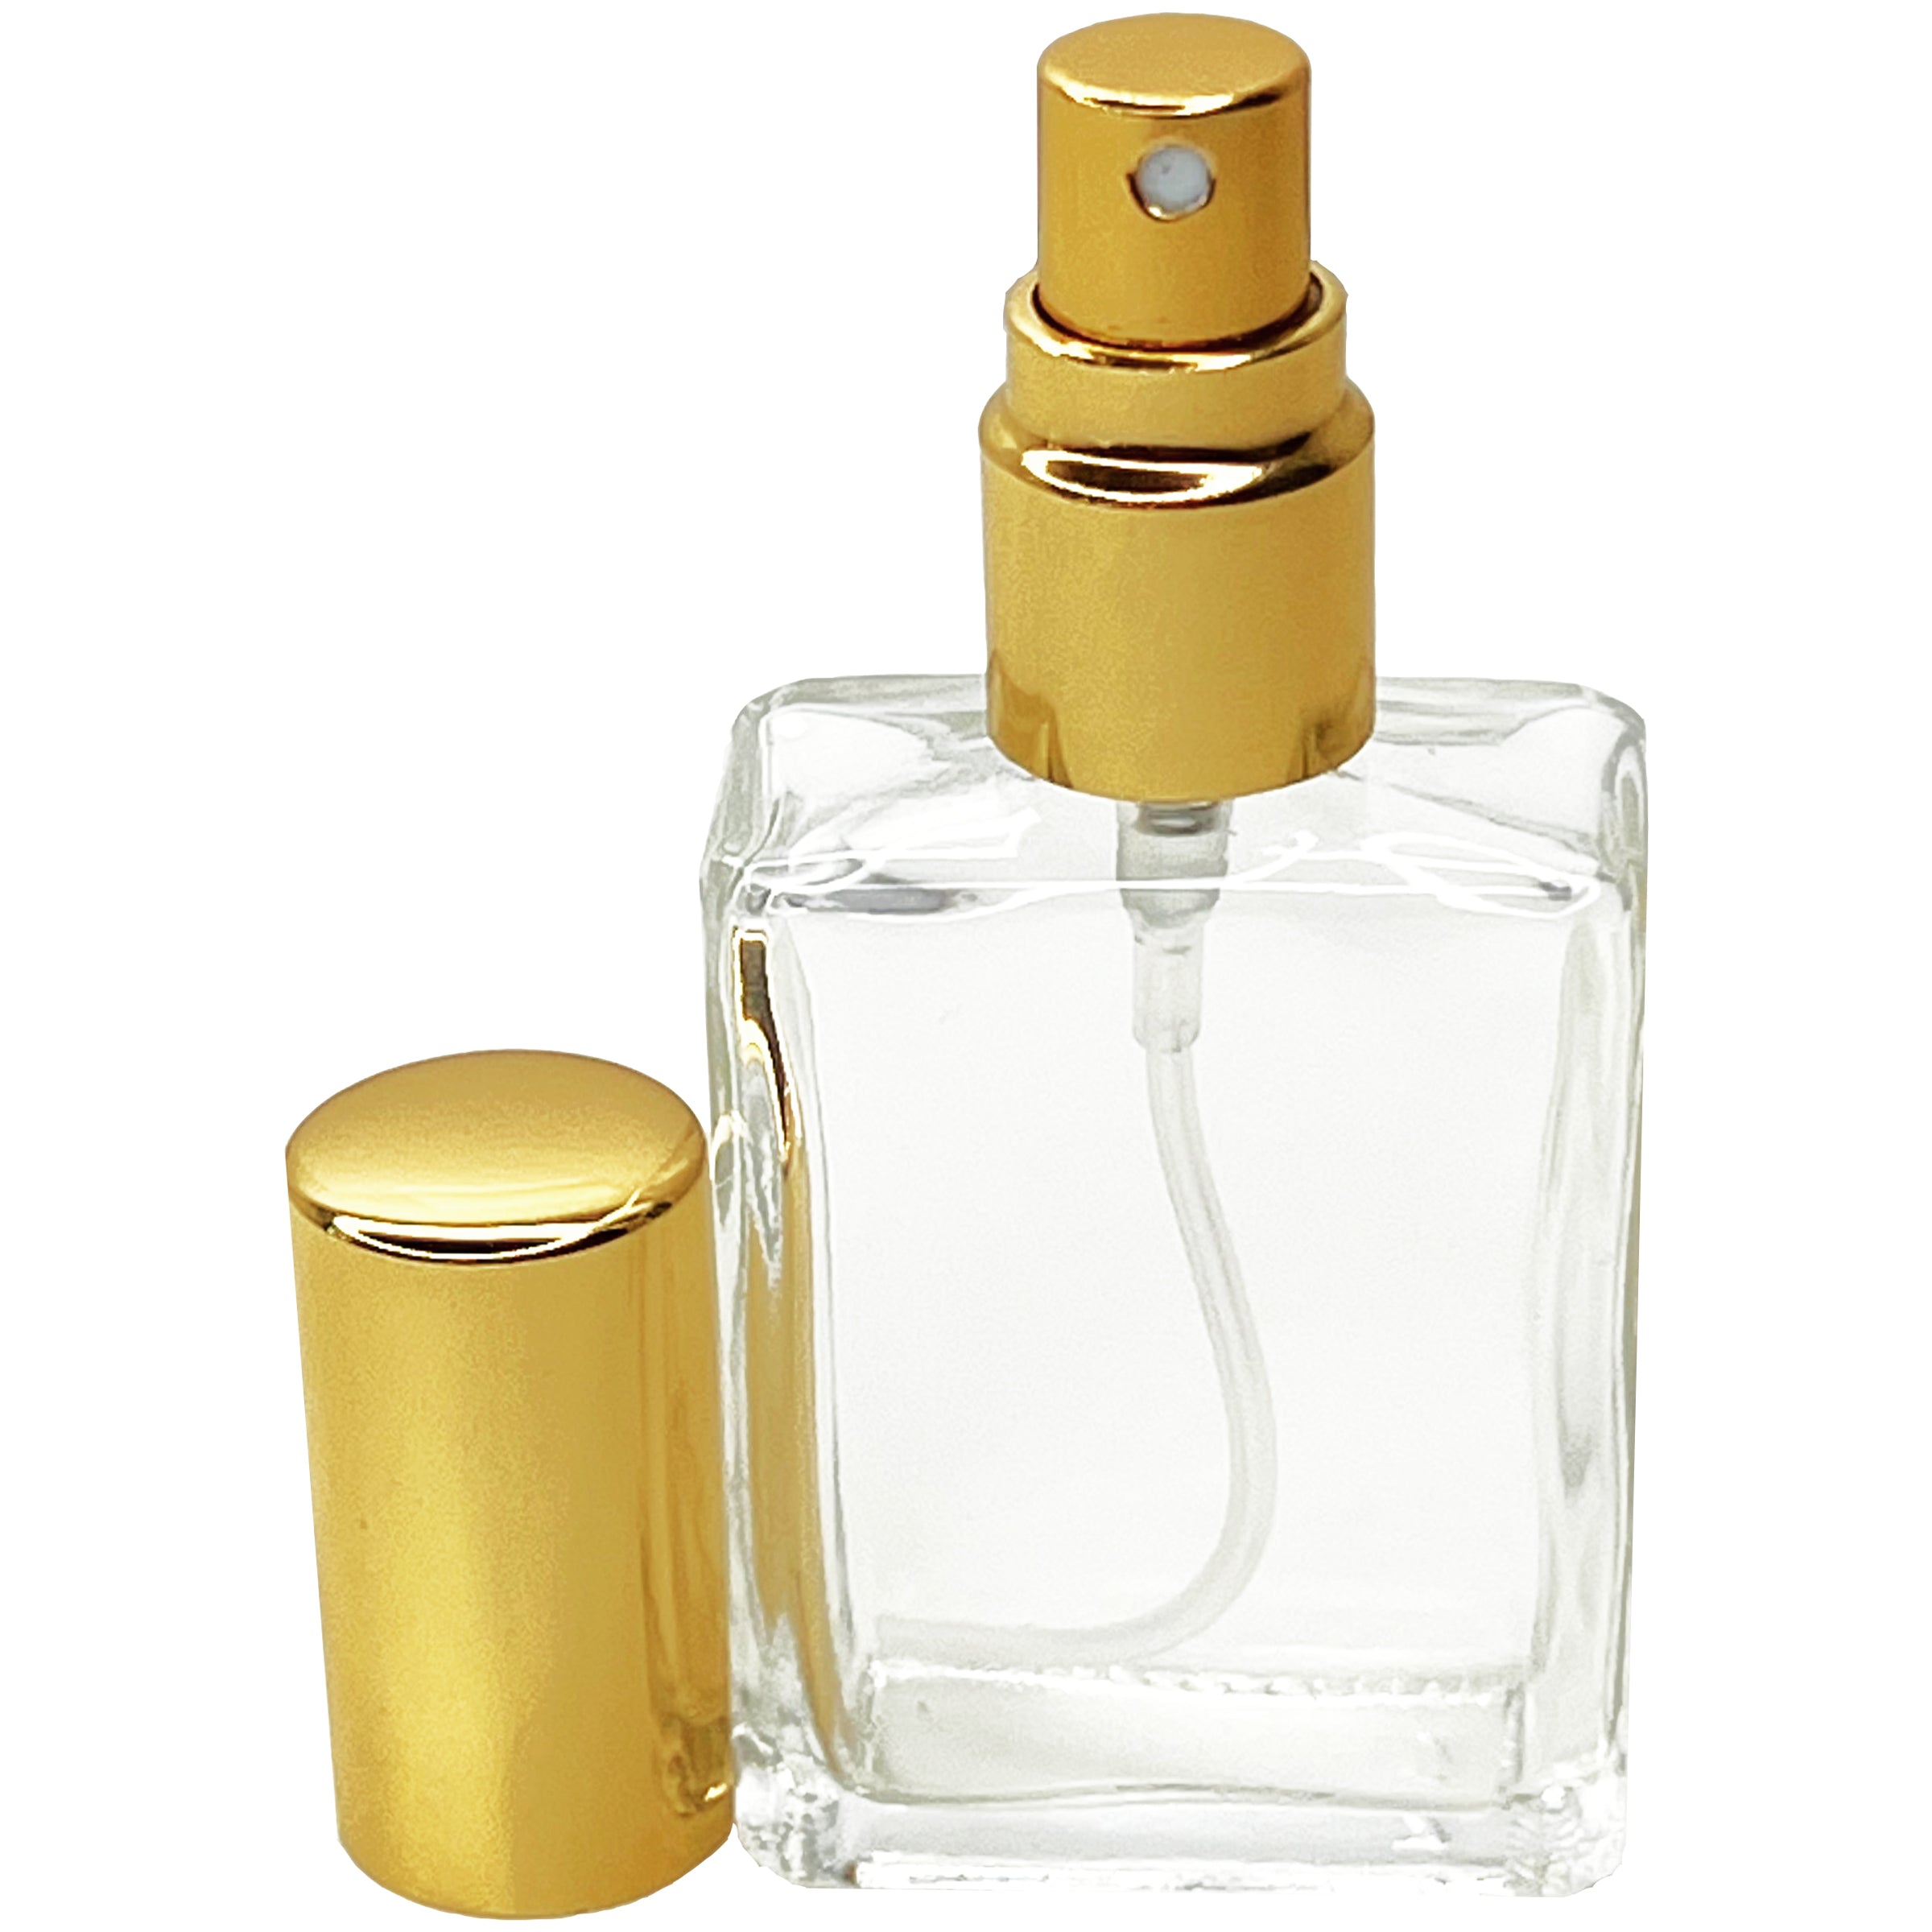 15ml 0.5oz Square Perfume Glass Spray Bottles Atomizers